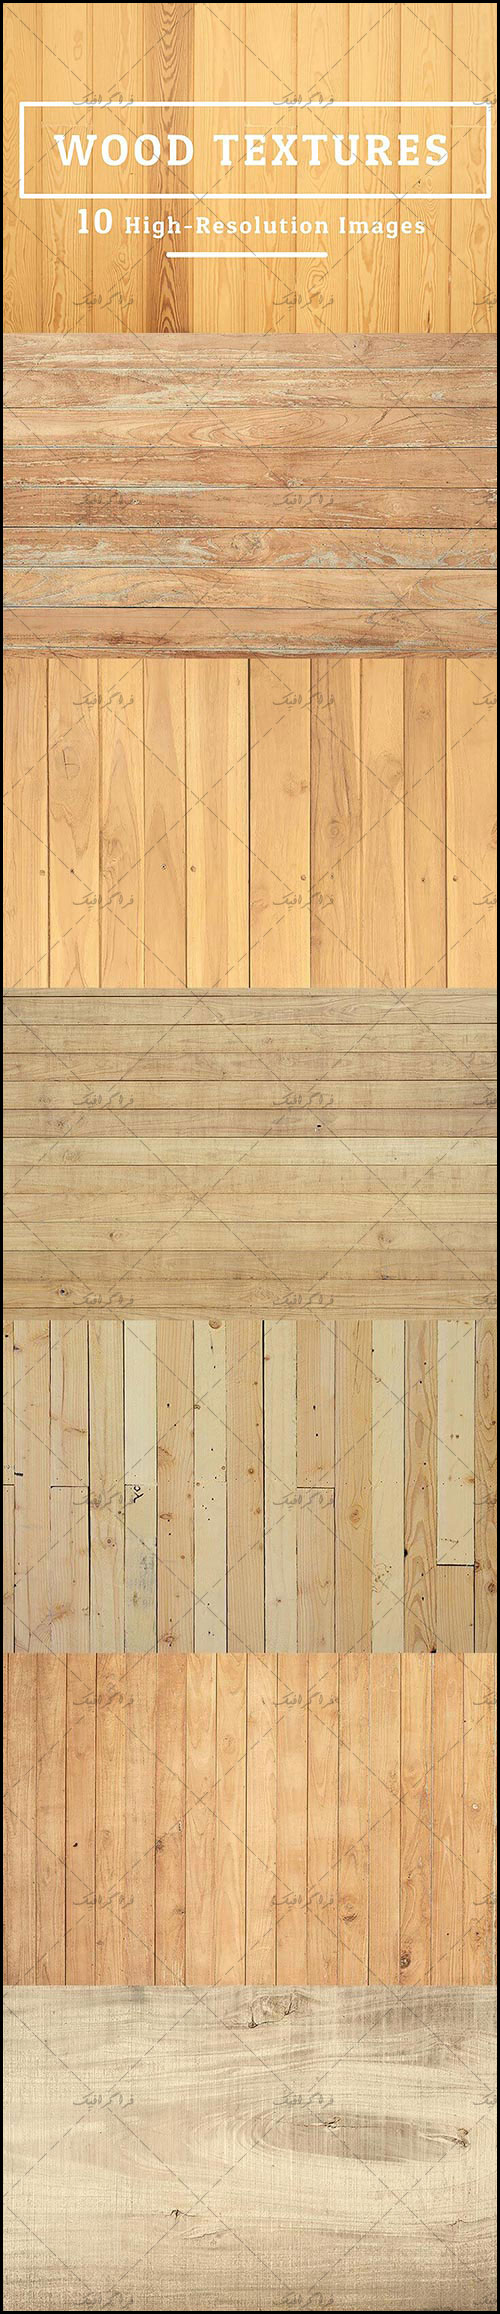 دانلود تکسچر های چوب Wood Textures - شماره 10